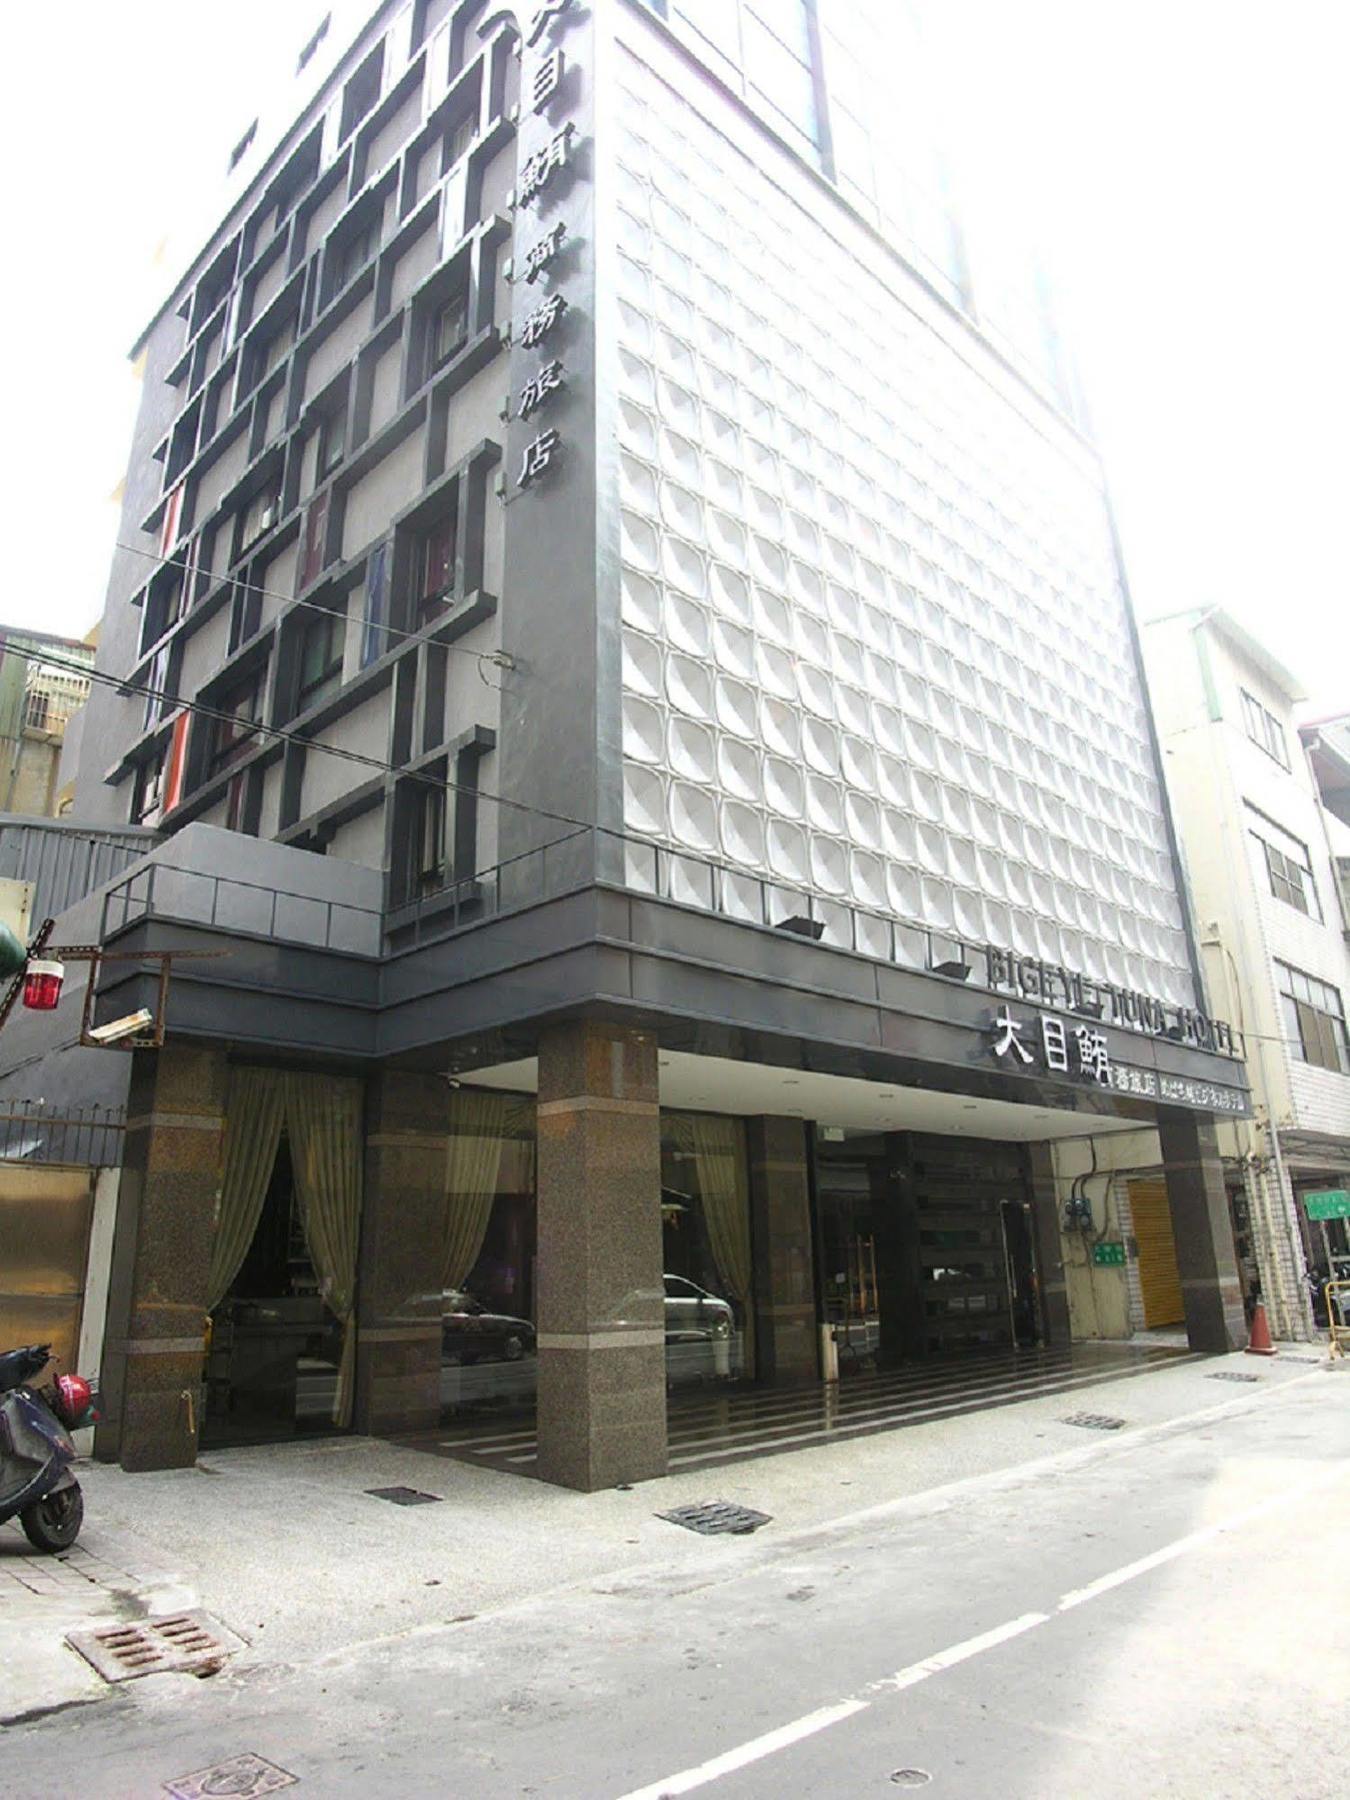 Fish Hotel - Yancheng Kaohsiung Extérieur photo